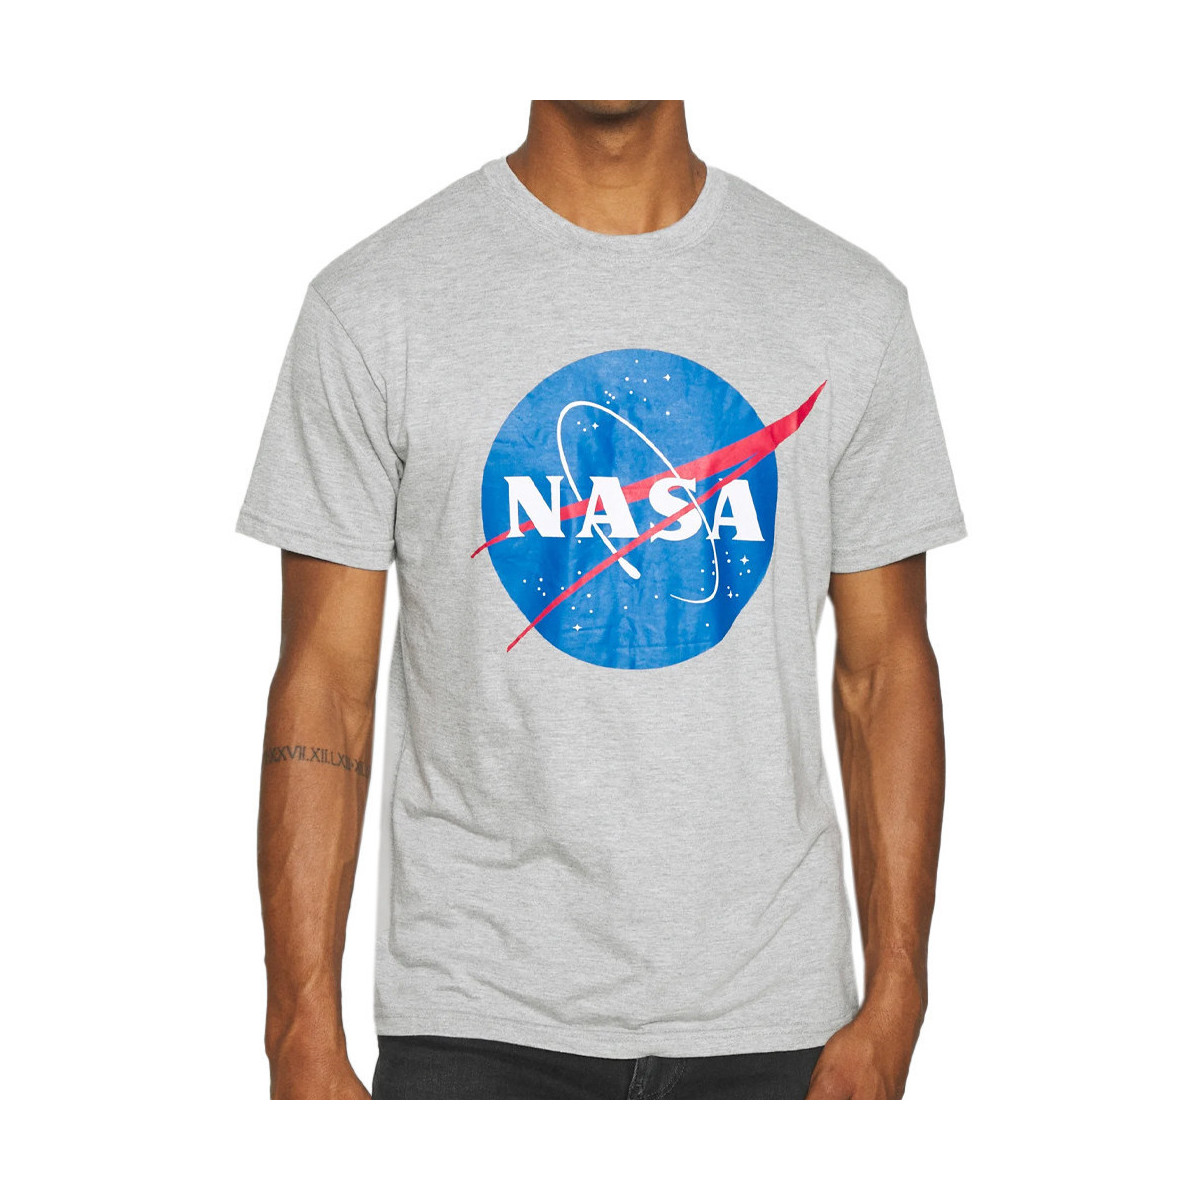 Kleidung Herren T-Shirts & Poloshirts Nasa -NASA08T Grau